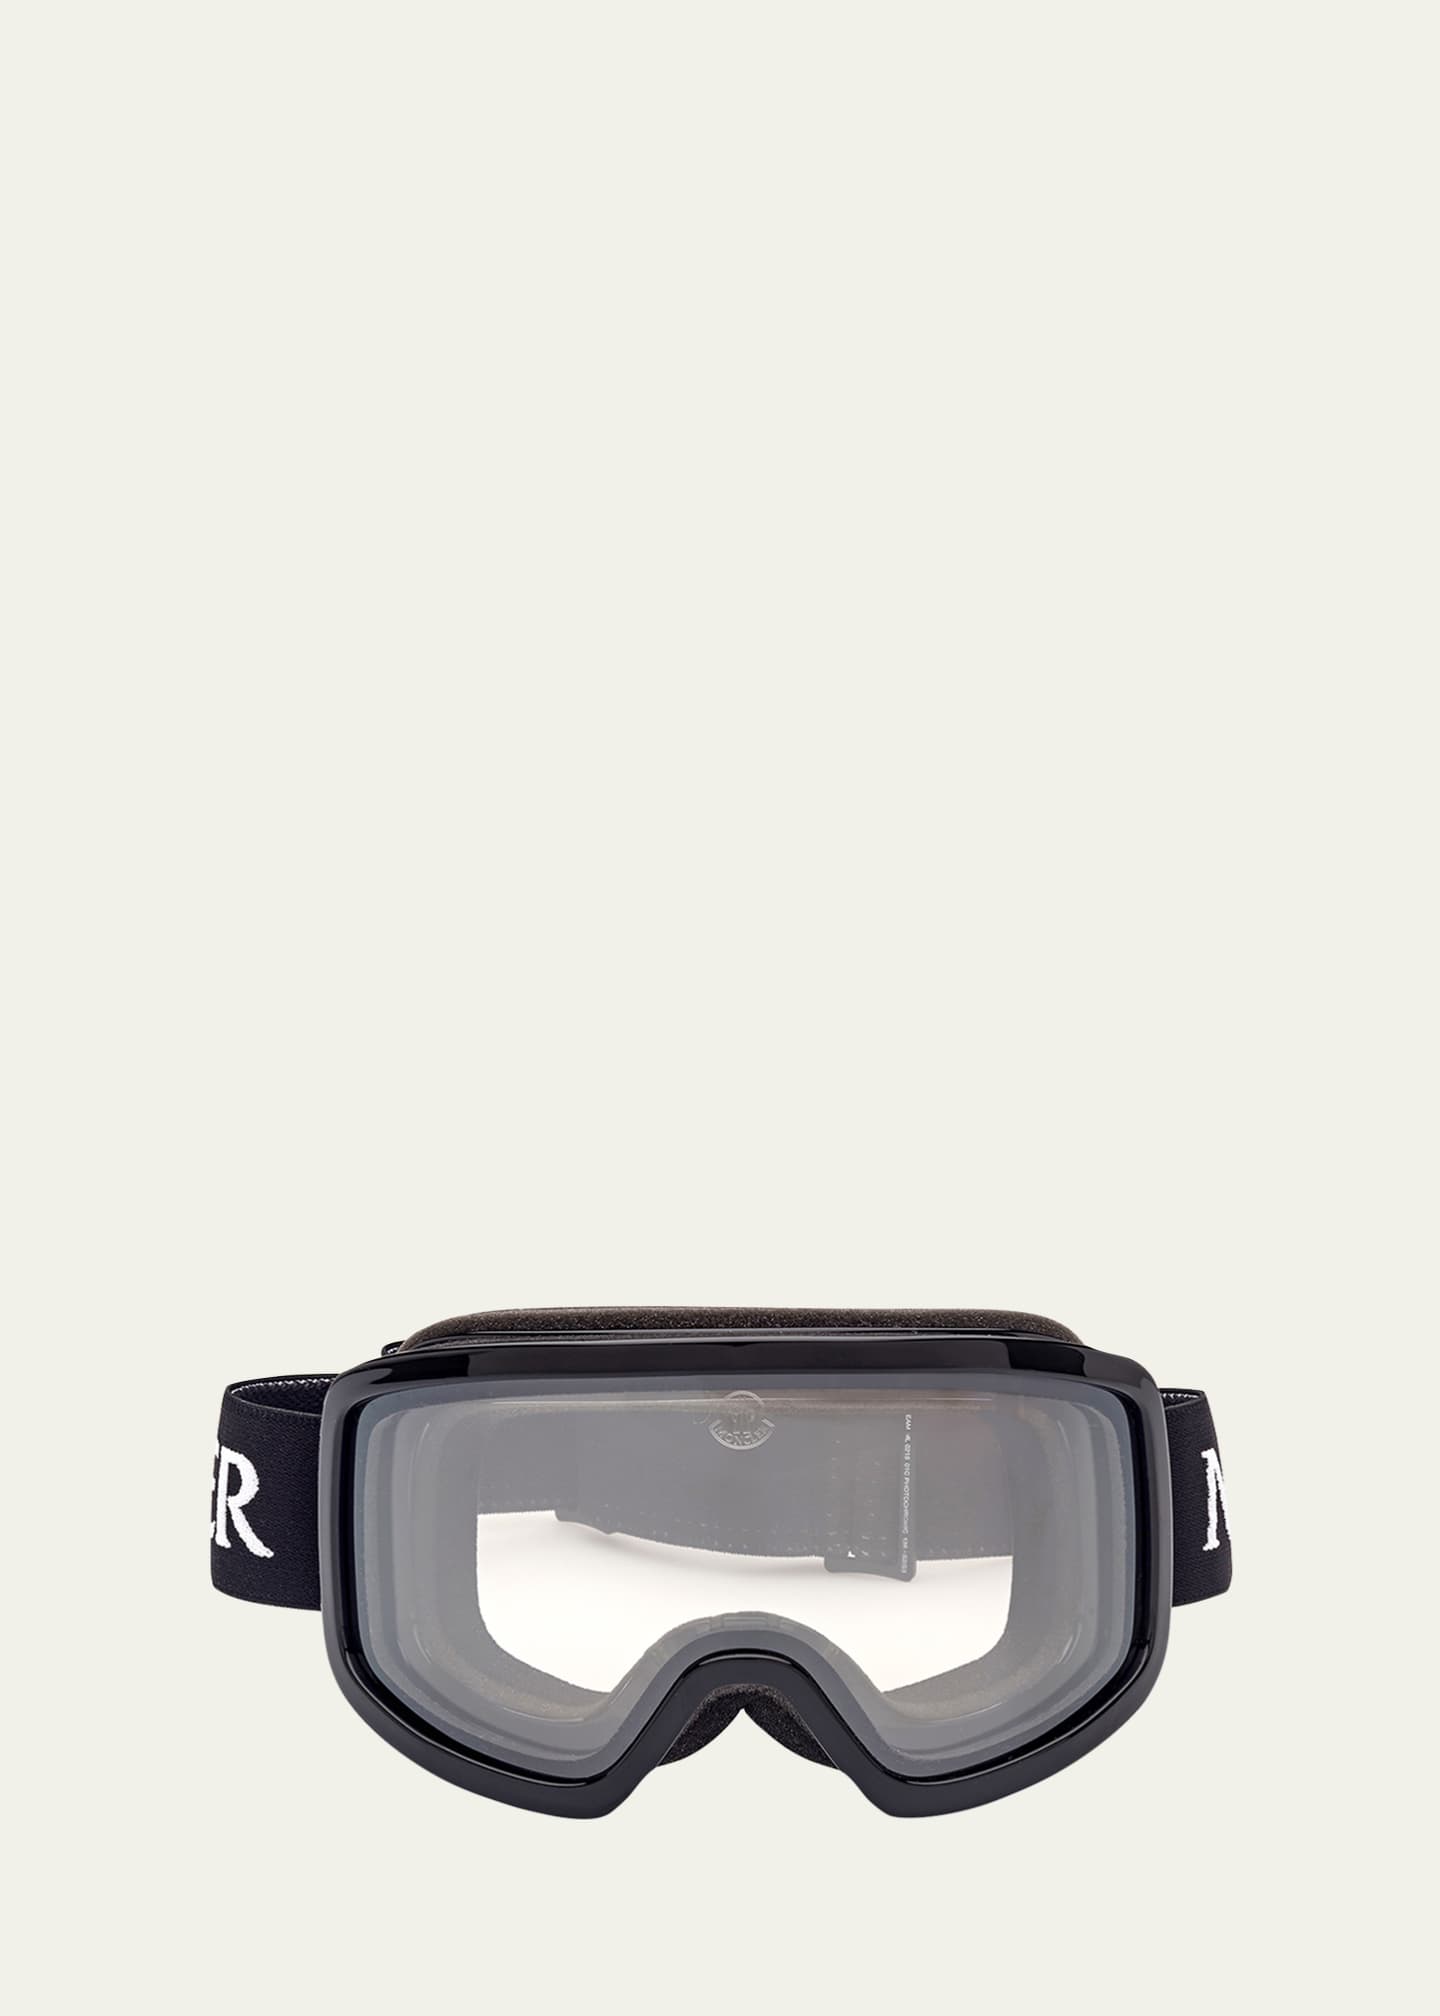 Terrabeam ski goggles